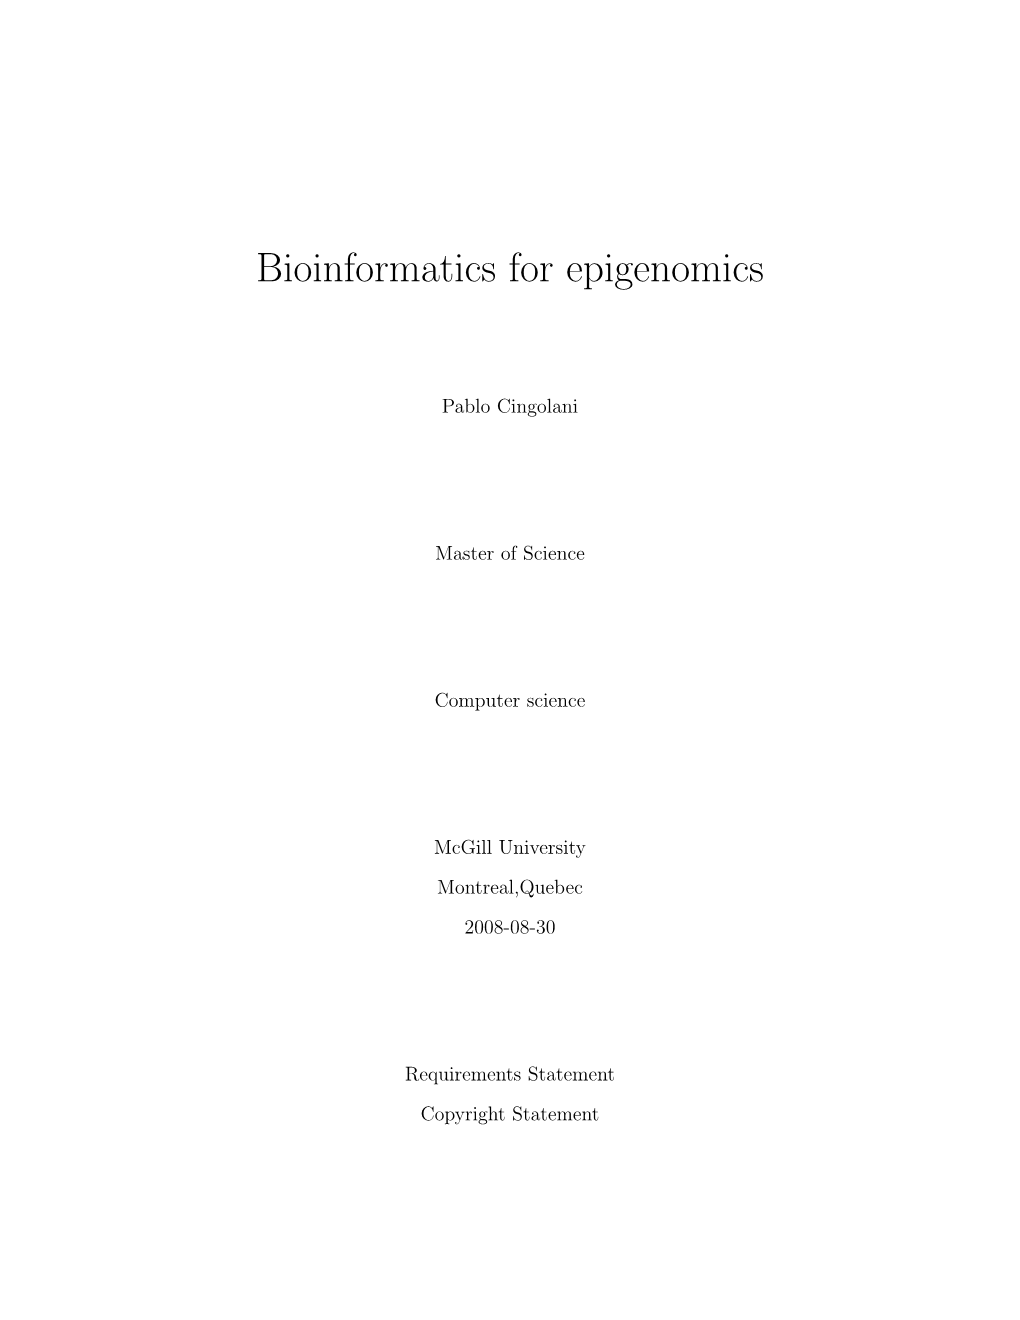 Bioinformatics for Epigenomics